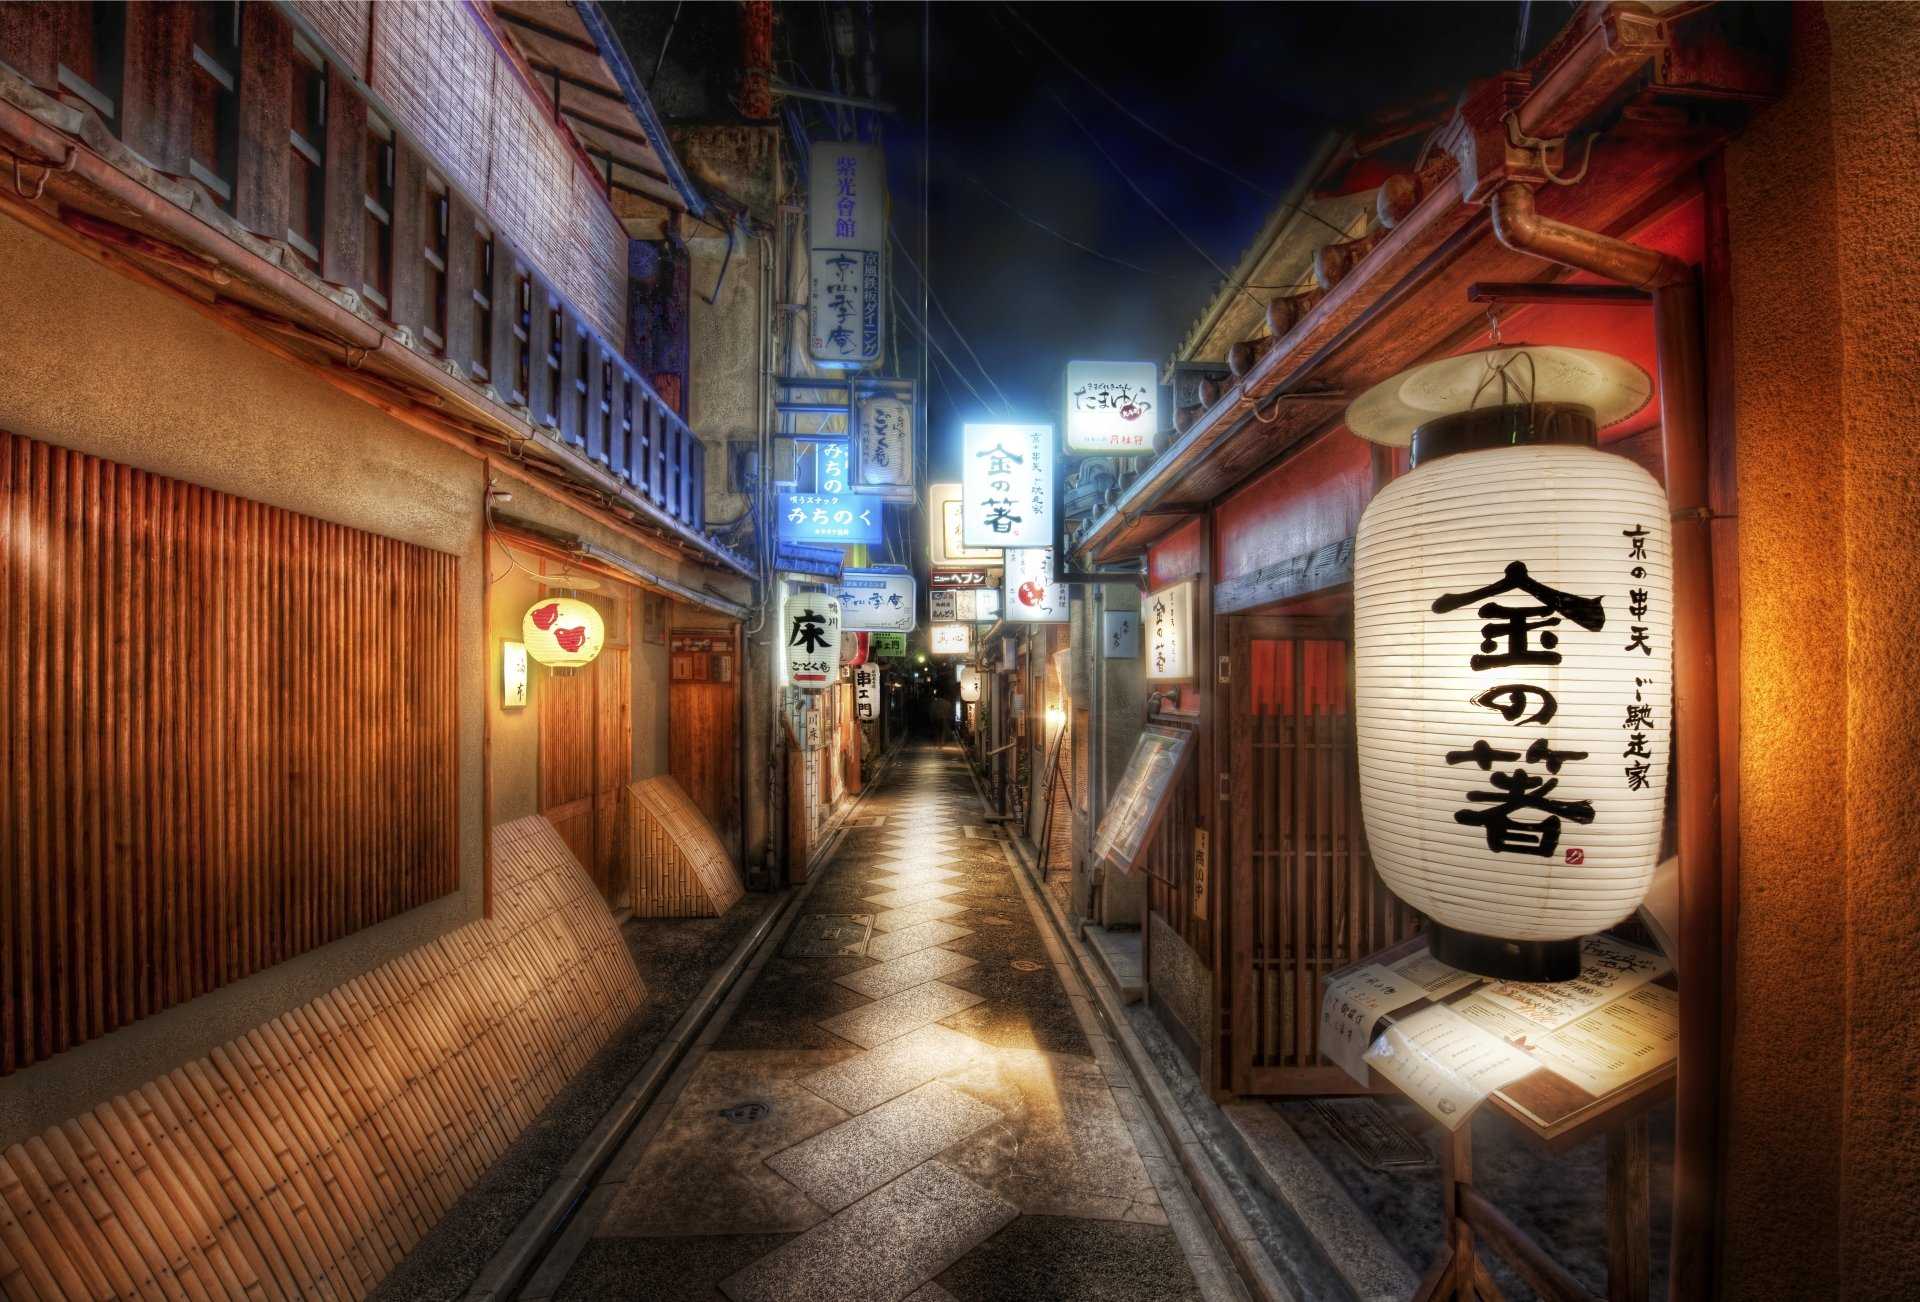 Tokyo Revengers Wallpapers  Top 35 Best Tokyo Revengers Backgrounds  Download